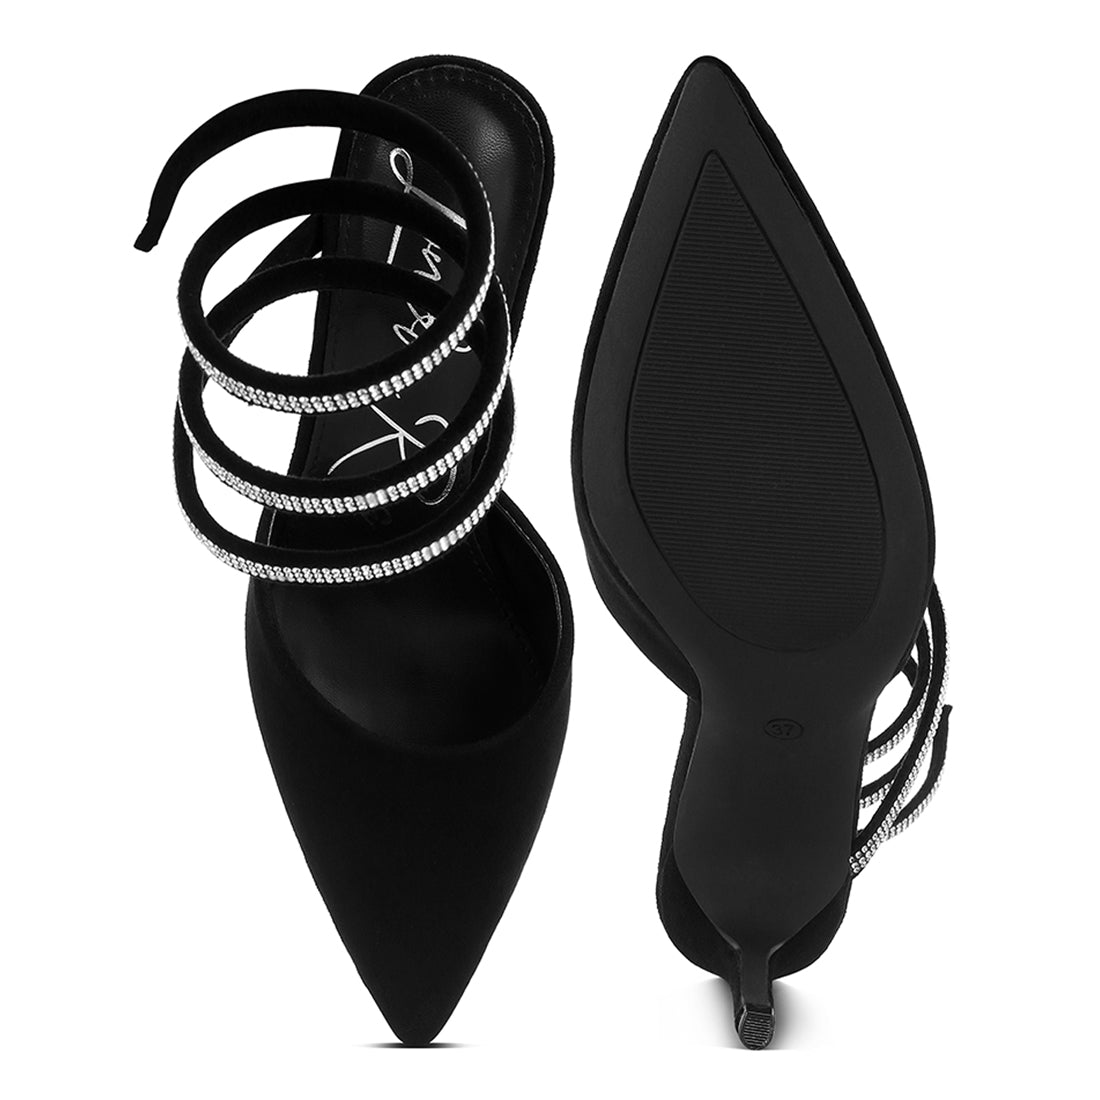 Elvira rihnestone embellished sandals#color_black